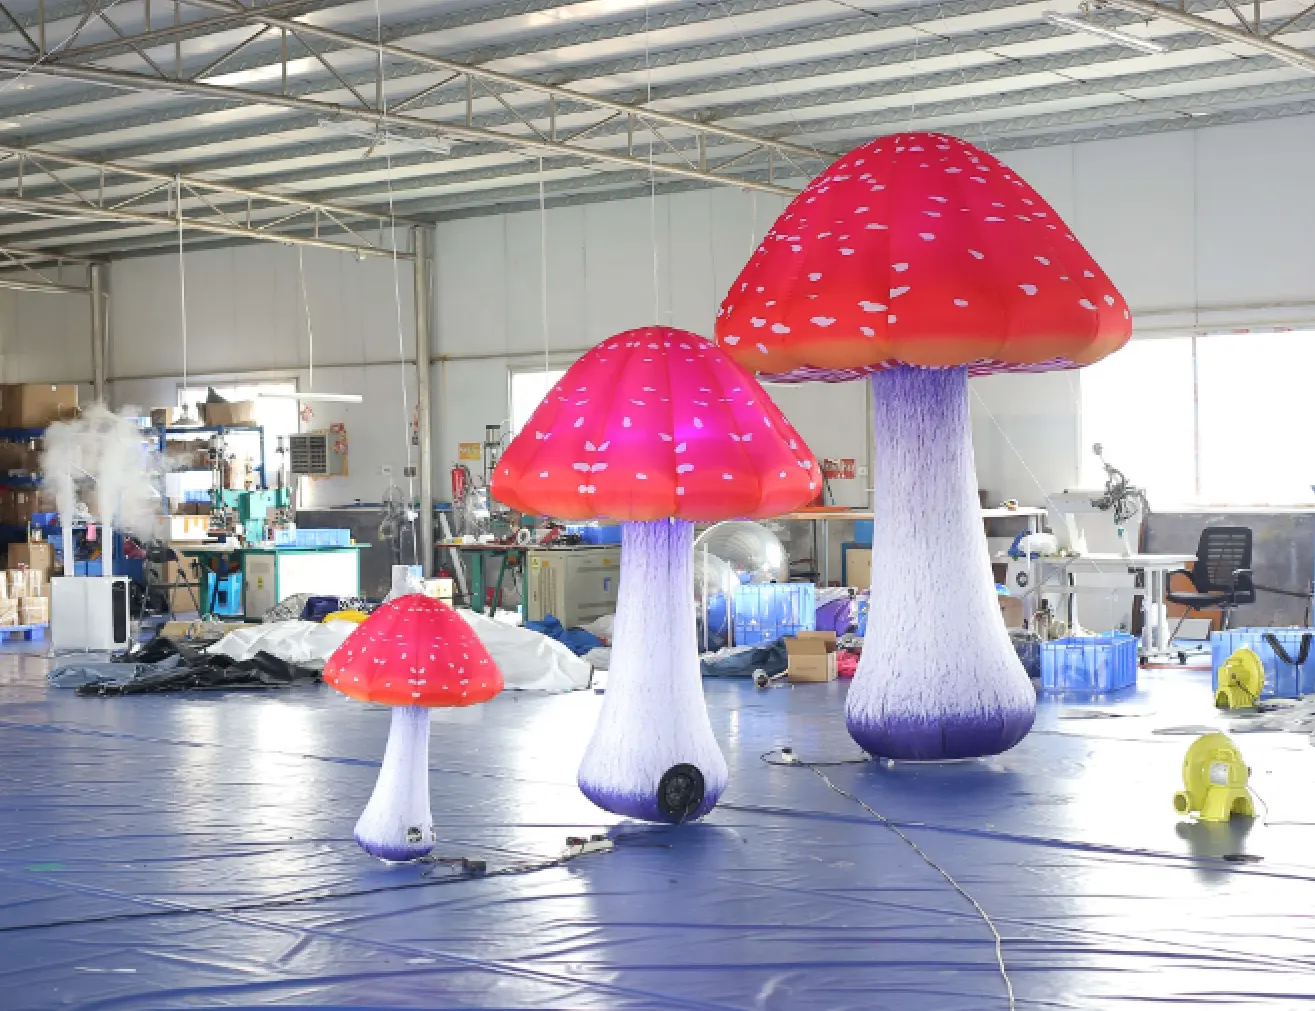 Modello di fungo gonfiabile pubblicitario con led in vendita palloncino a fungo